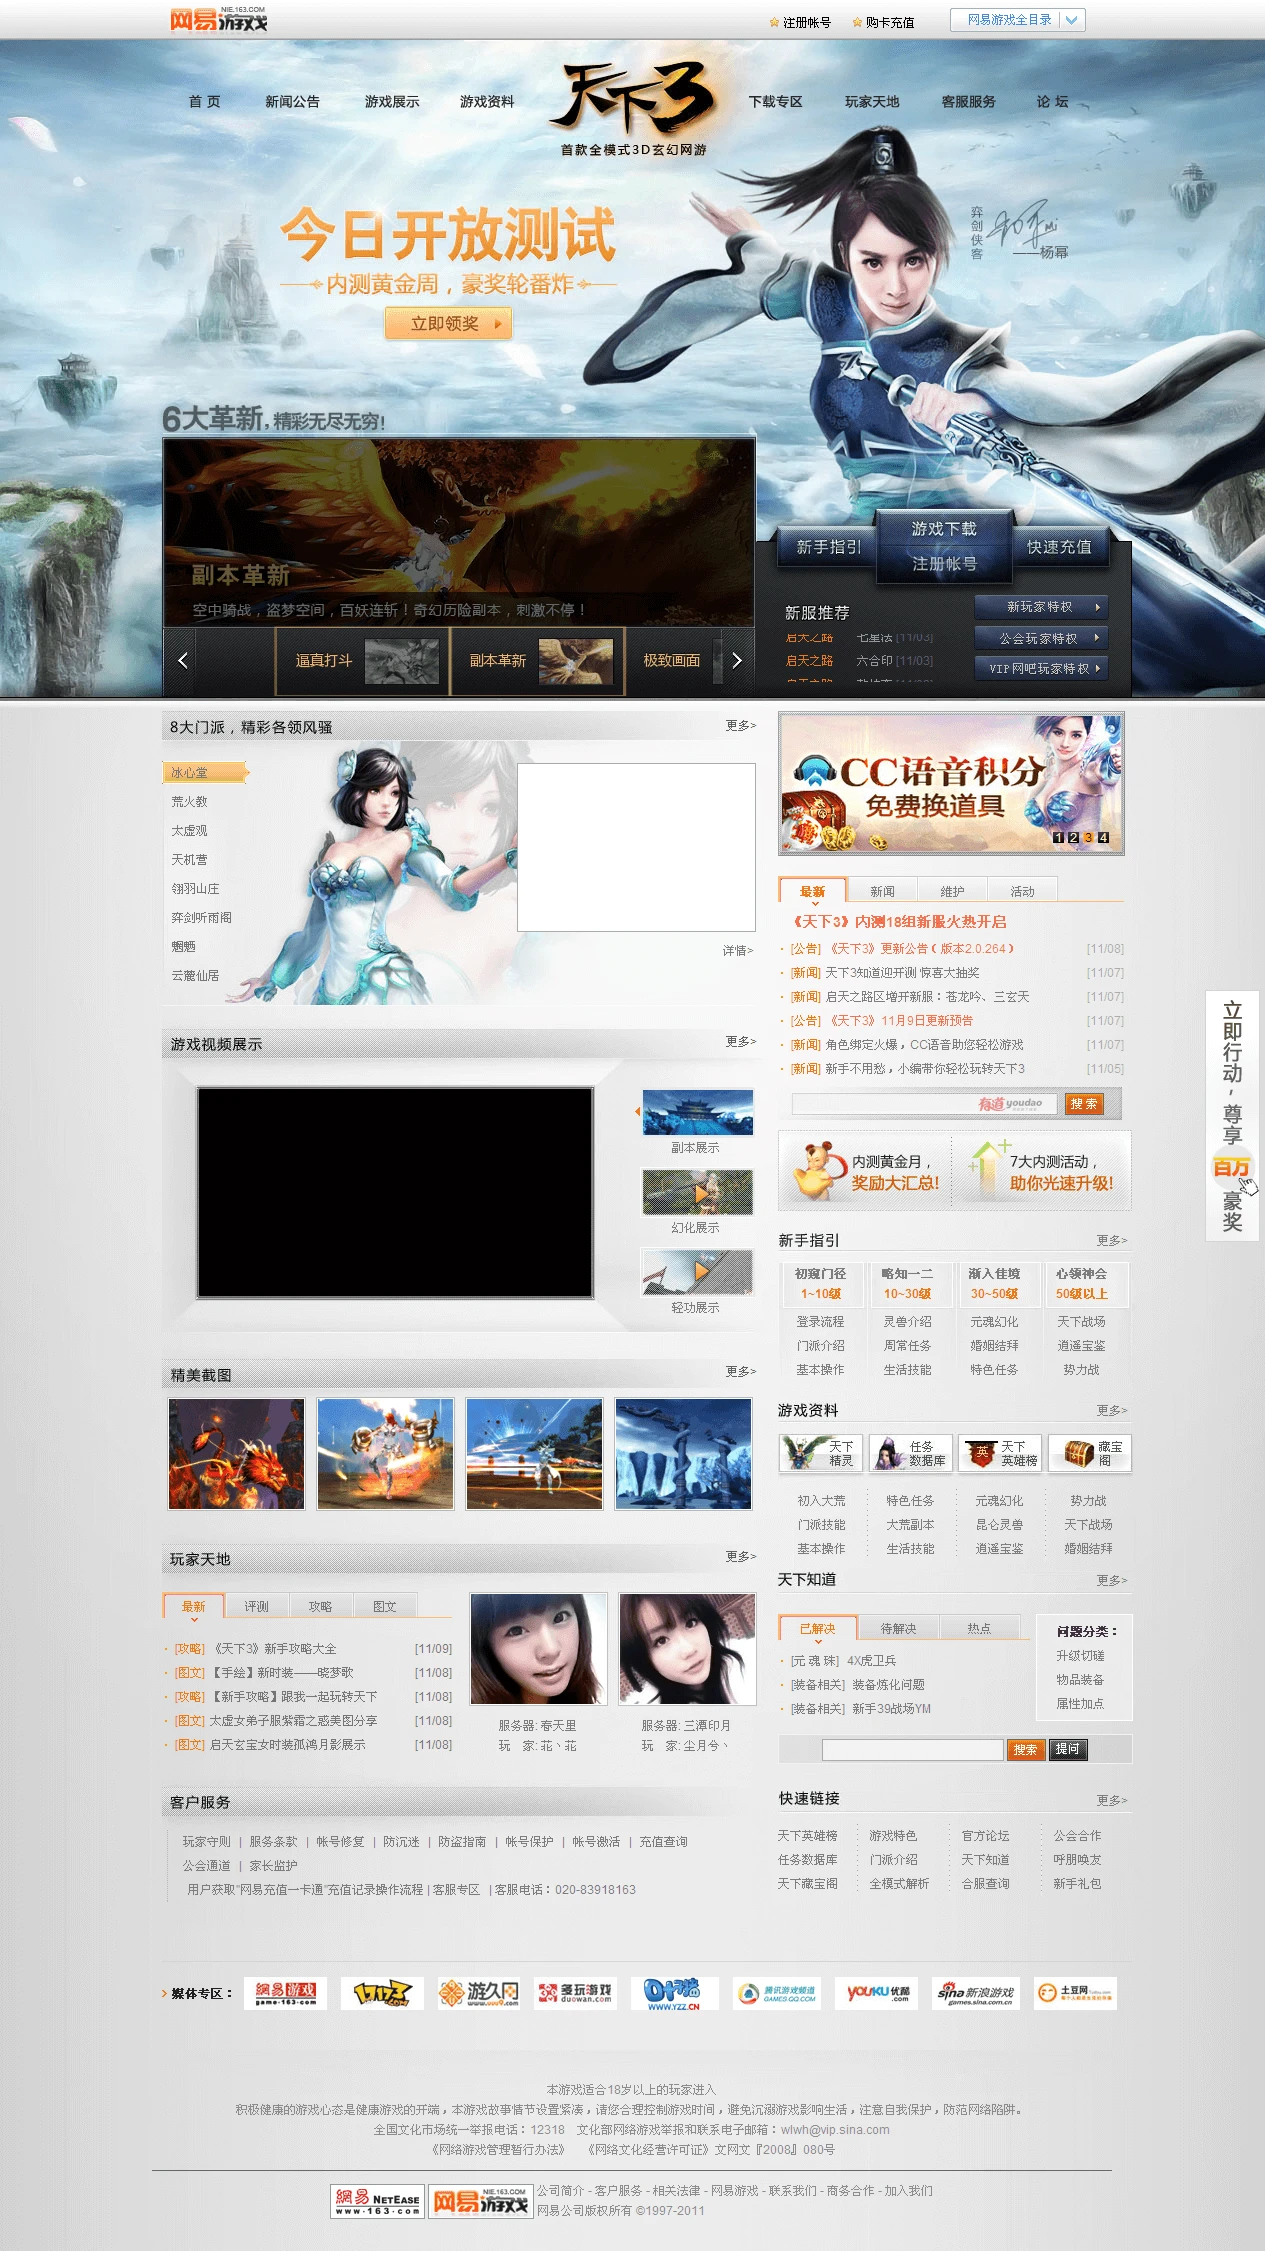 国产网游中国风3D武侠游戏之天下网页设计赏析 主页